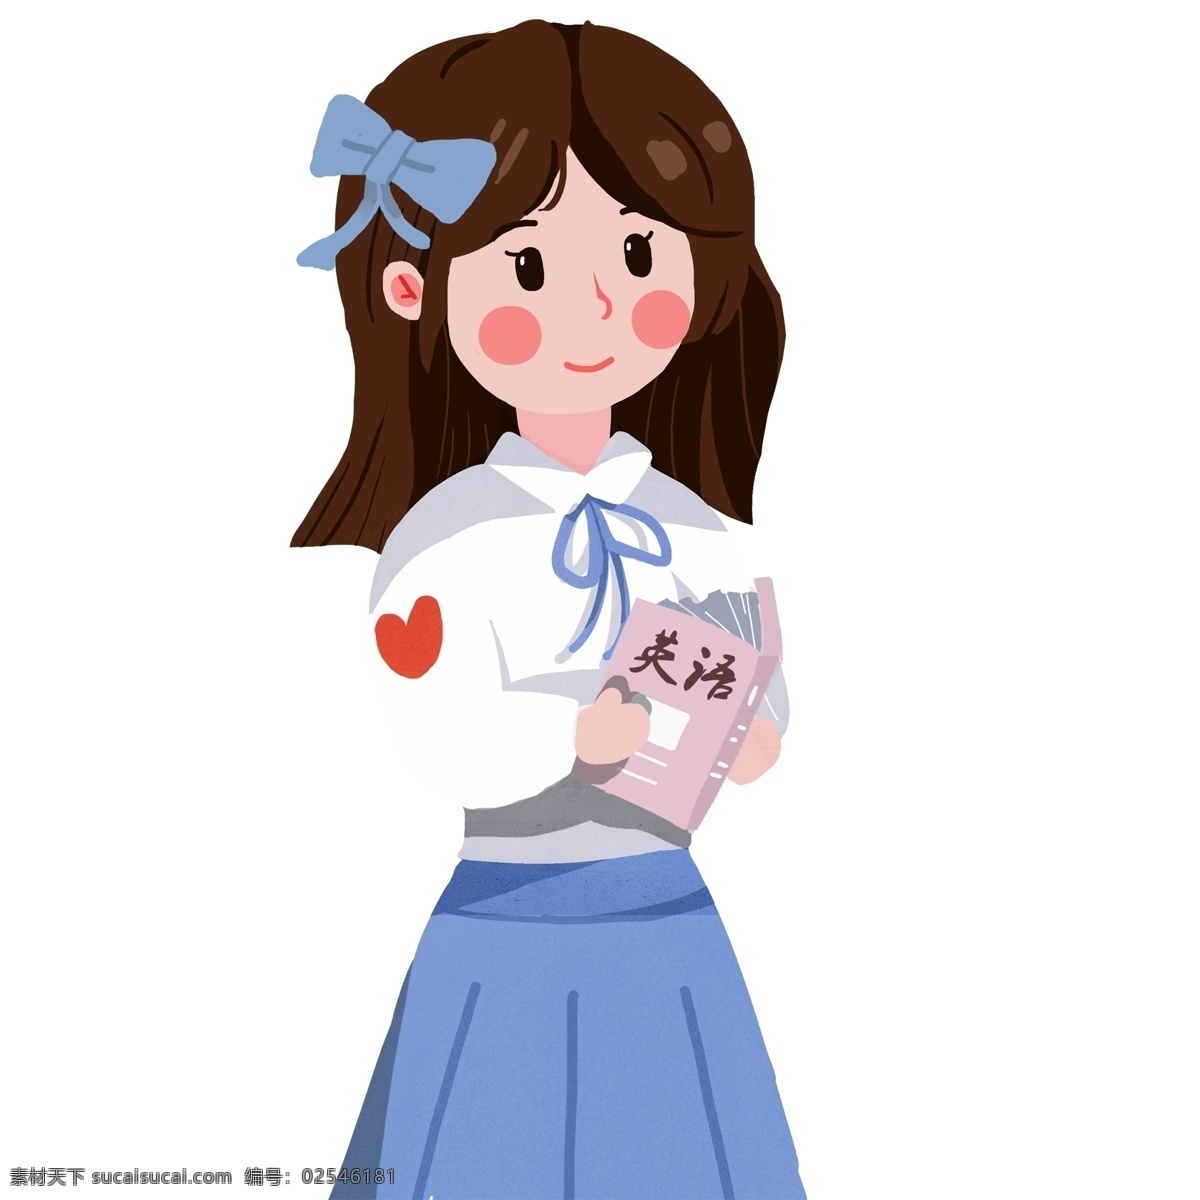 棕色 蓝色 红色 粉色 白色 人物 小女孩 英语 书 英语书 学生 学习 学校 可爱 卡通 手绘